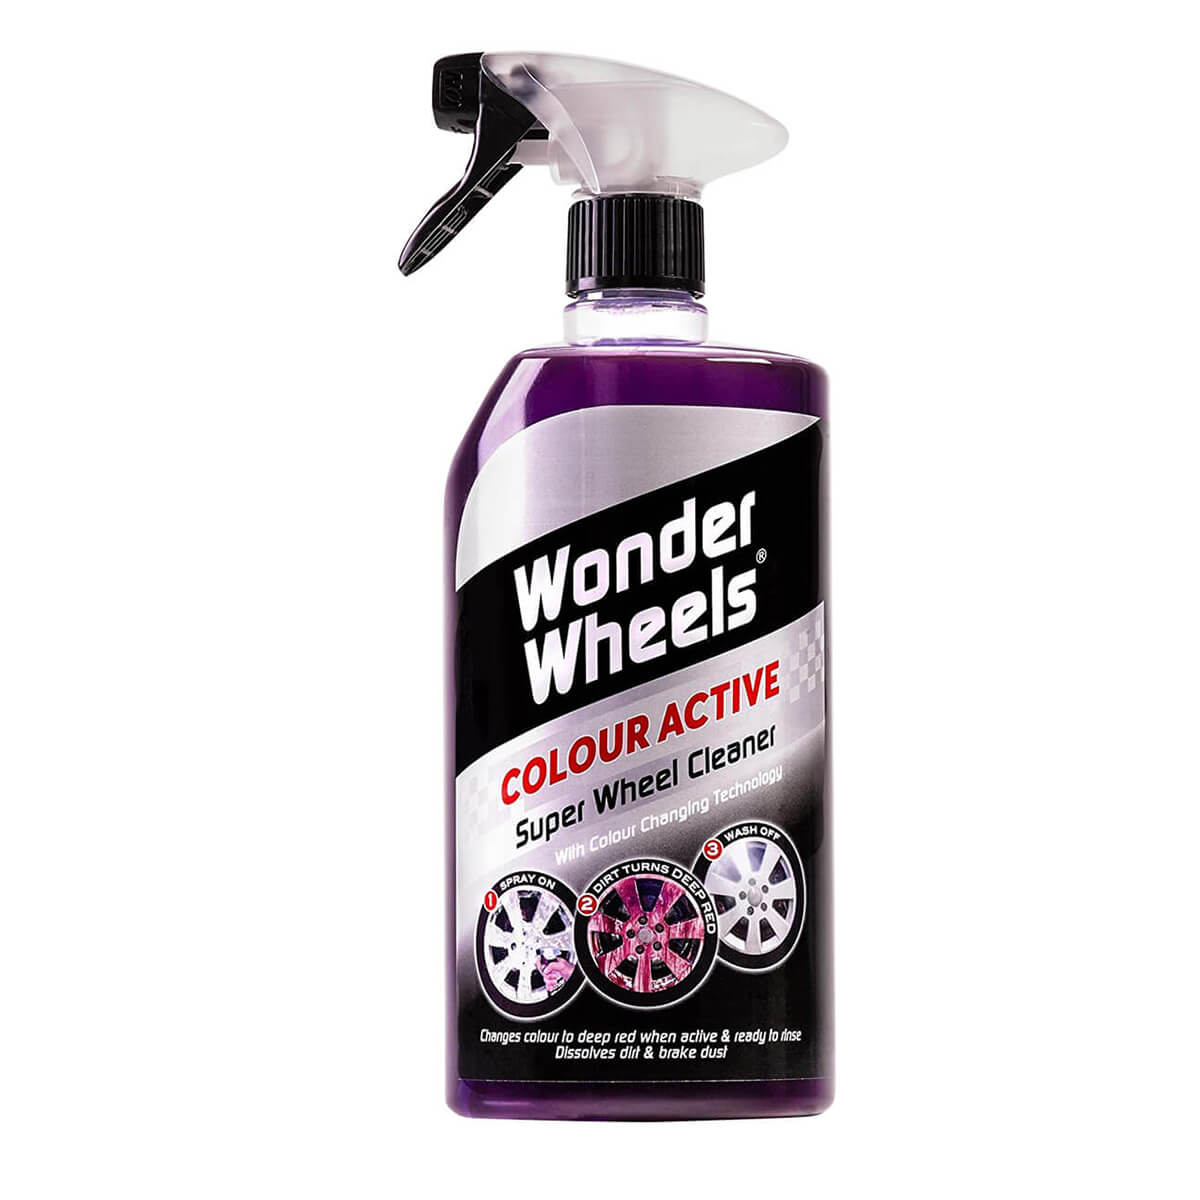 Wonder Wheels Original Wheel Cleaner